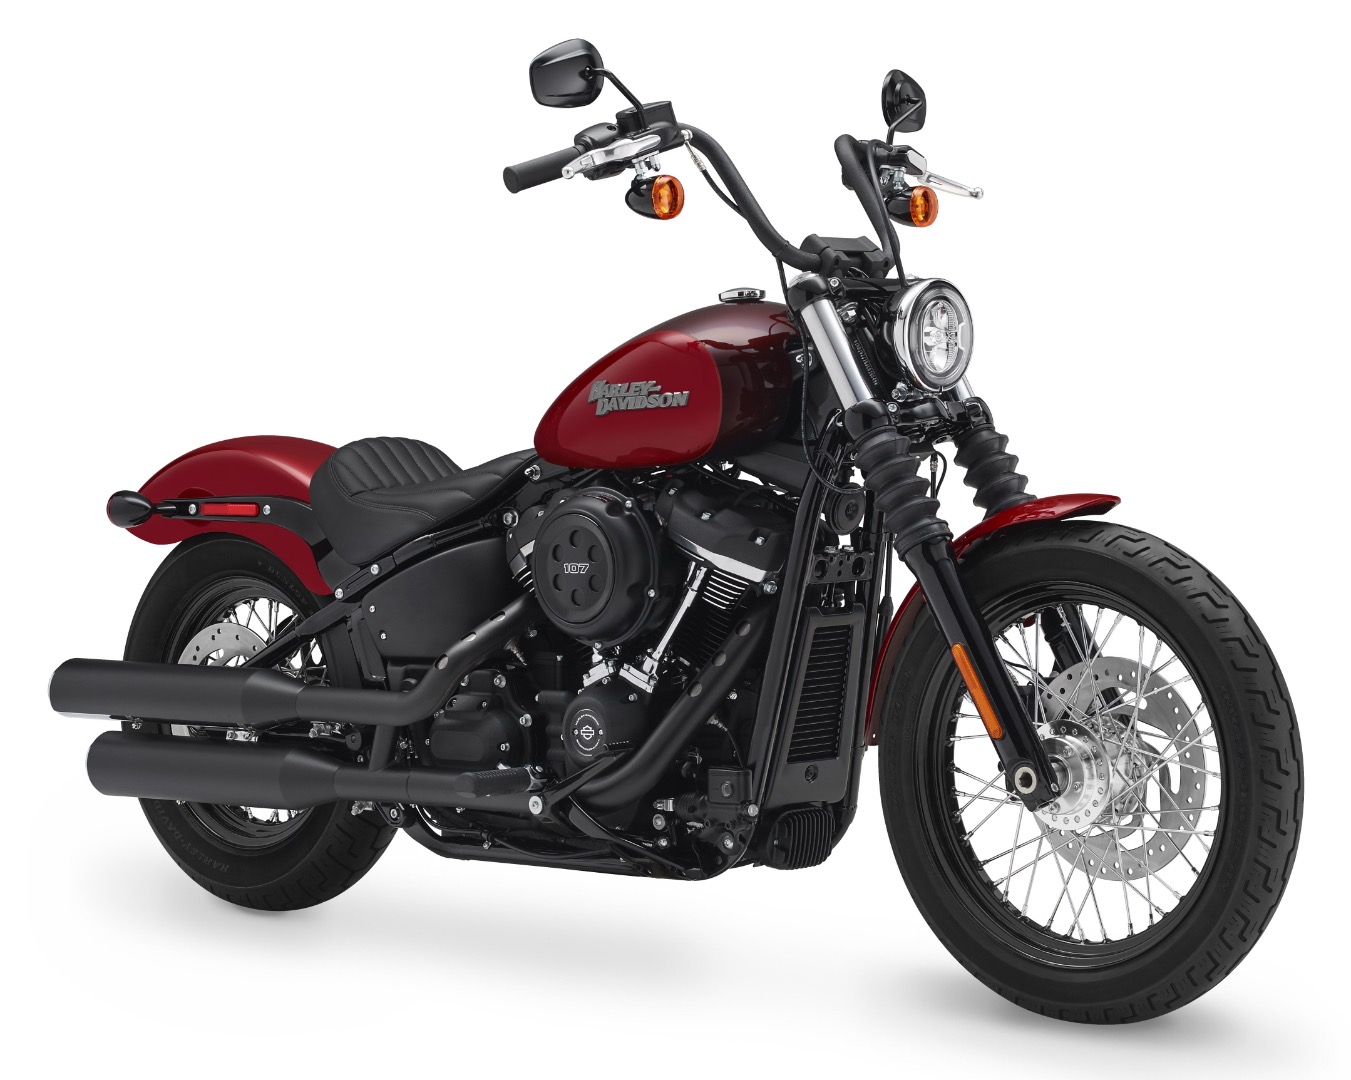 BITUBO Federbein für Harley Davidson diverse Modelle